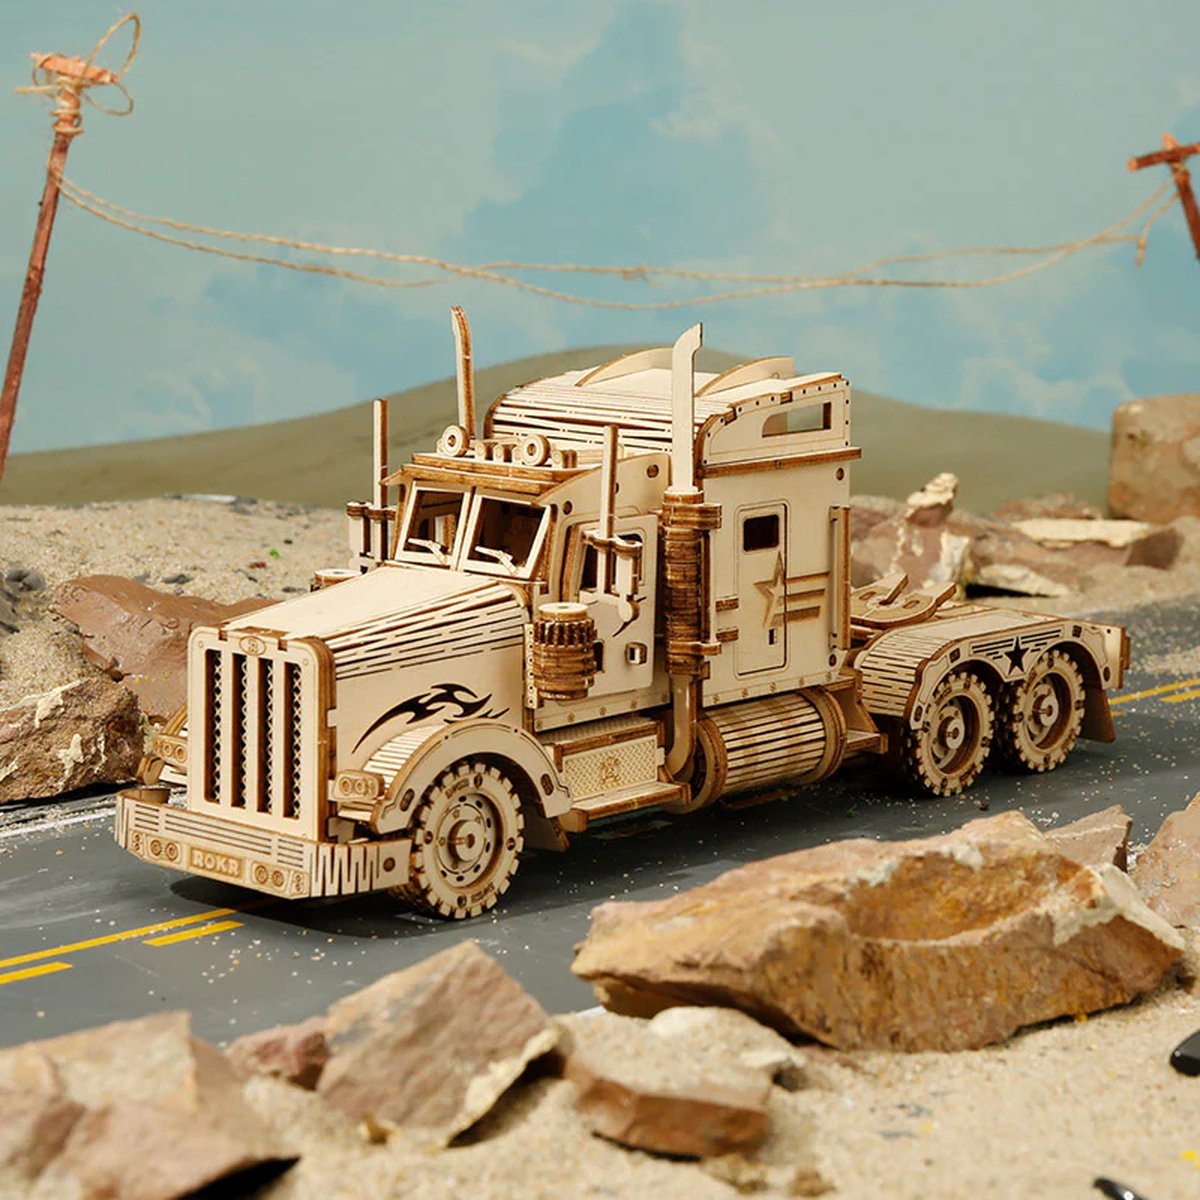 Robotime - Heavy Truck - Karakteristieke truck - Vrachtwagen - Voertuig - Houten modelbouw - DIY - Hout 3D puzzel - Knutselen - Bouwpakket - Houten 3D puzzel voor volwassenen - Vrije tijd - Educatief - Ontspanning - Tot rust komen - Houten puzzel